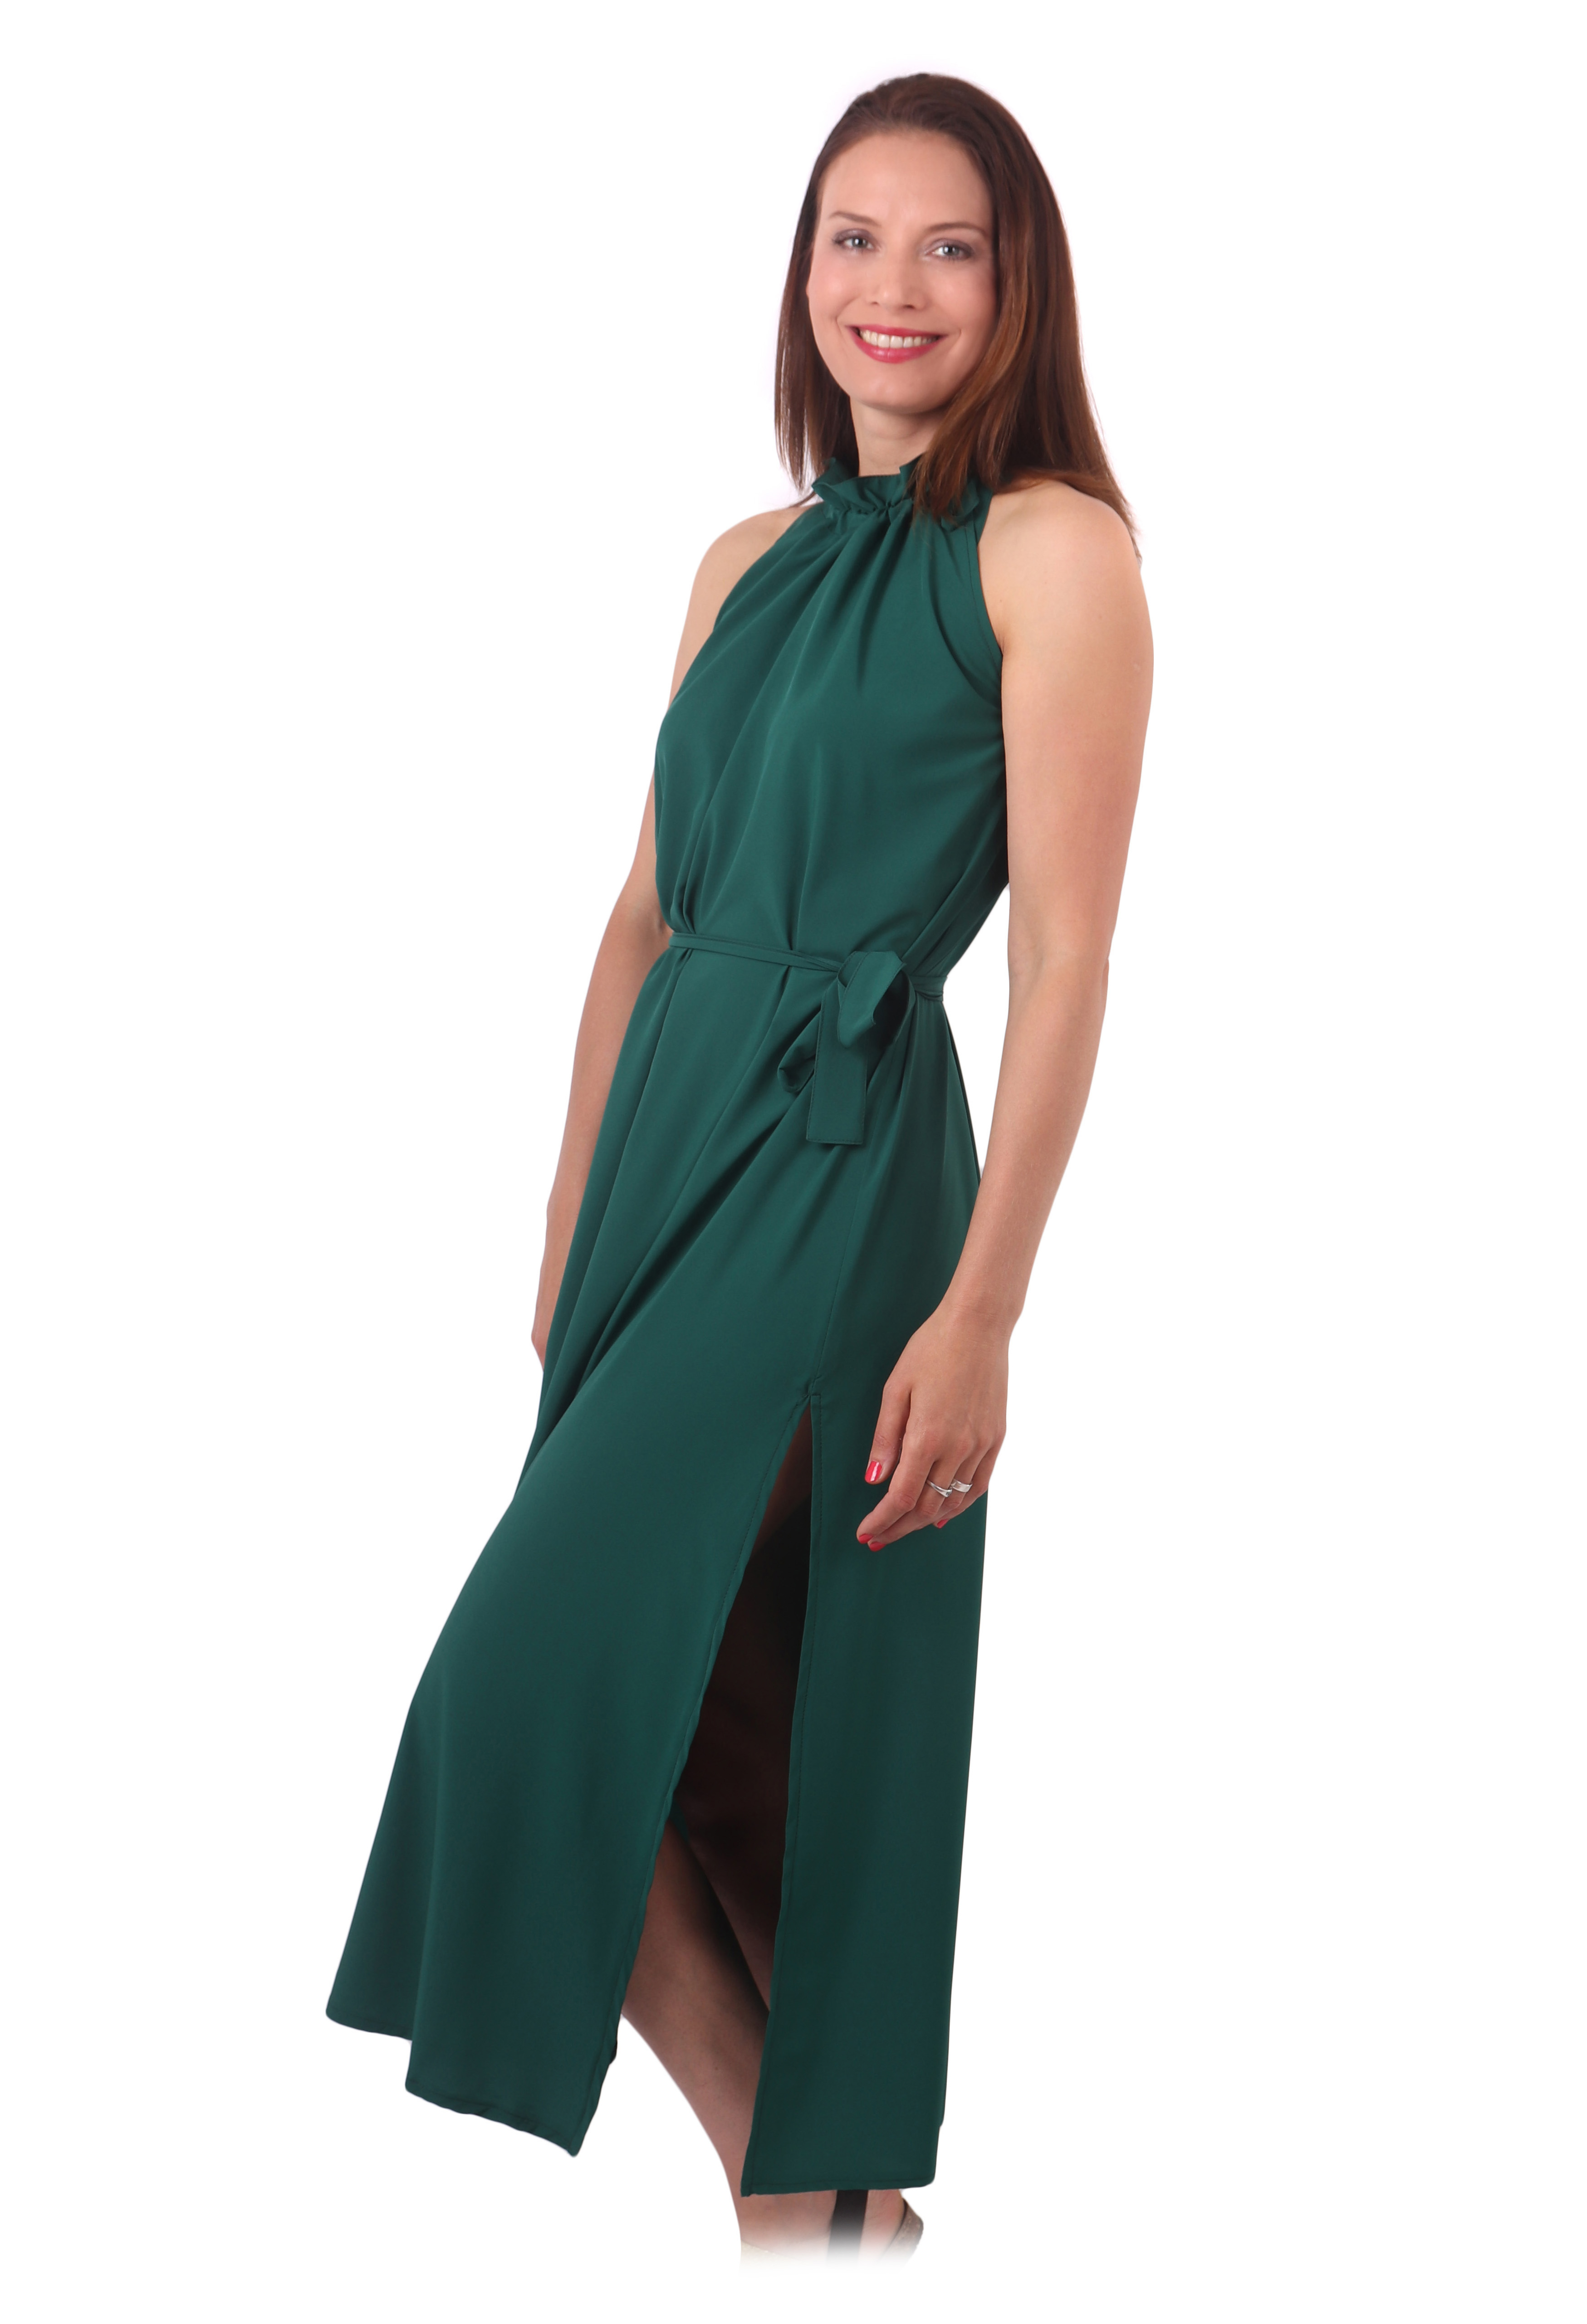 Spoločenské šaty Heda, dlouhé, smaragdové